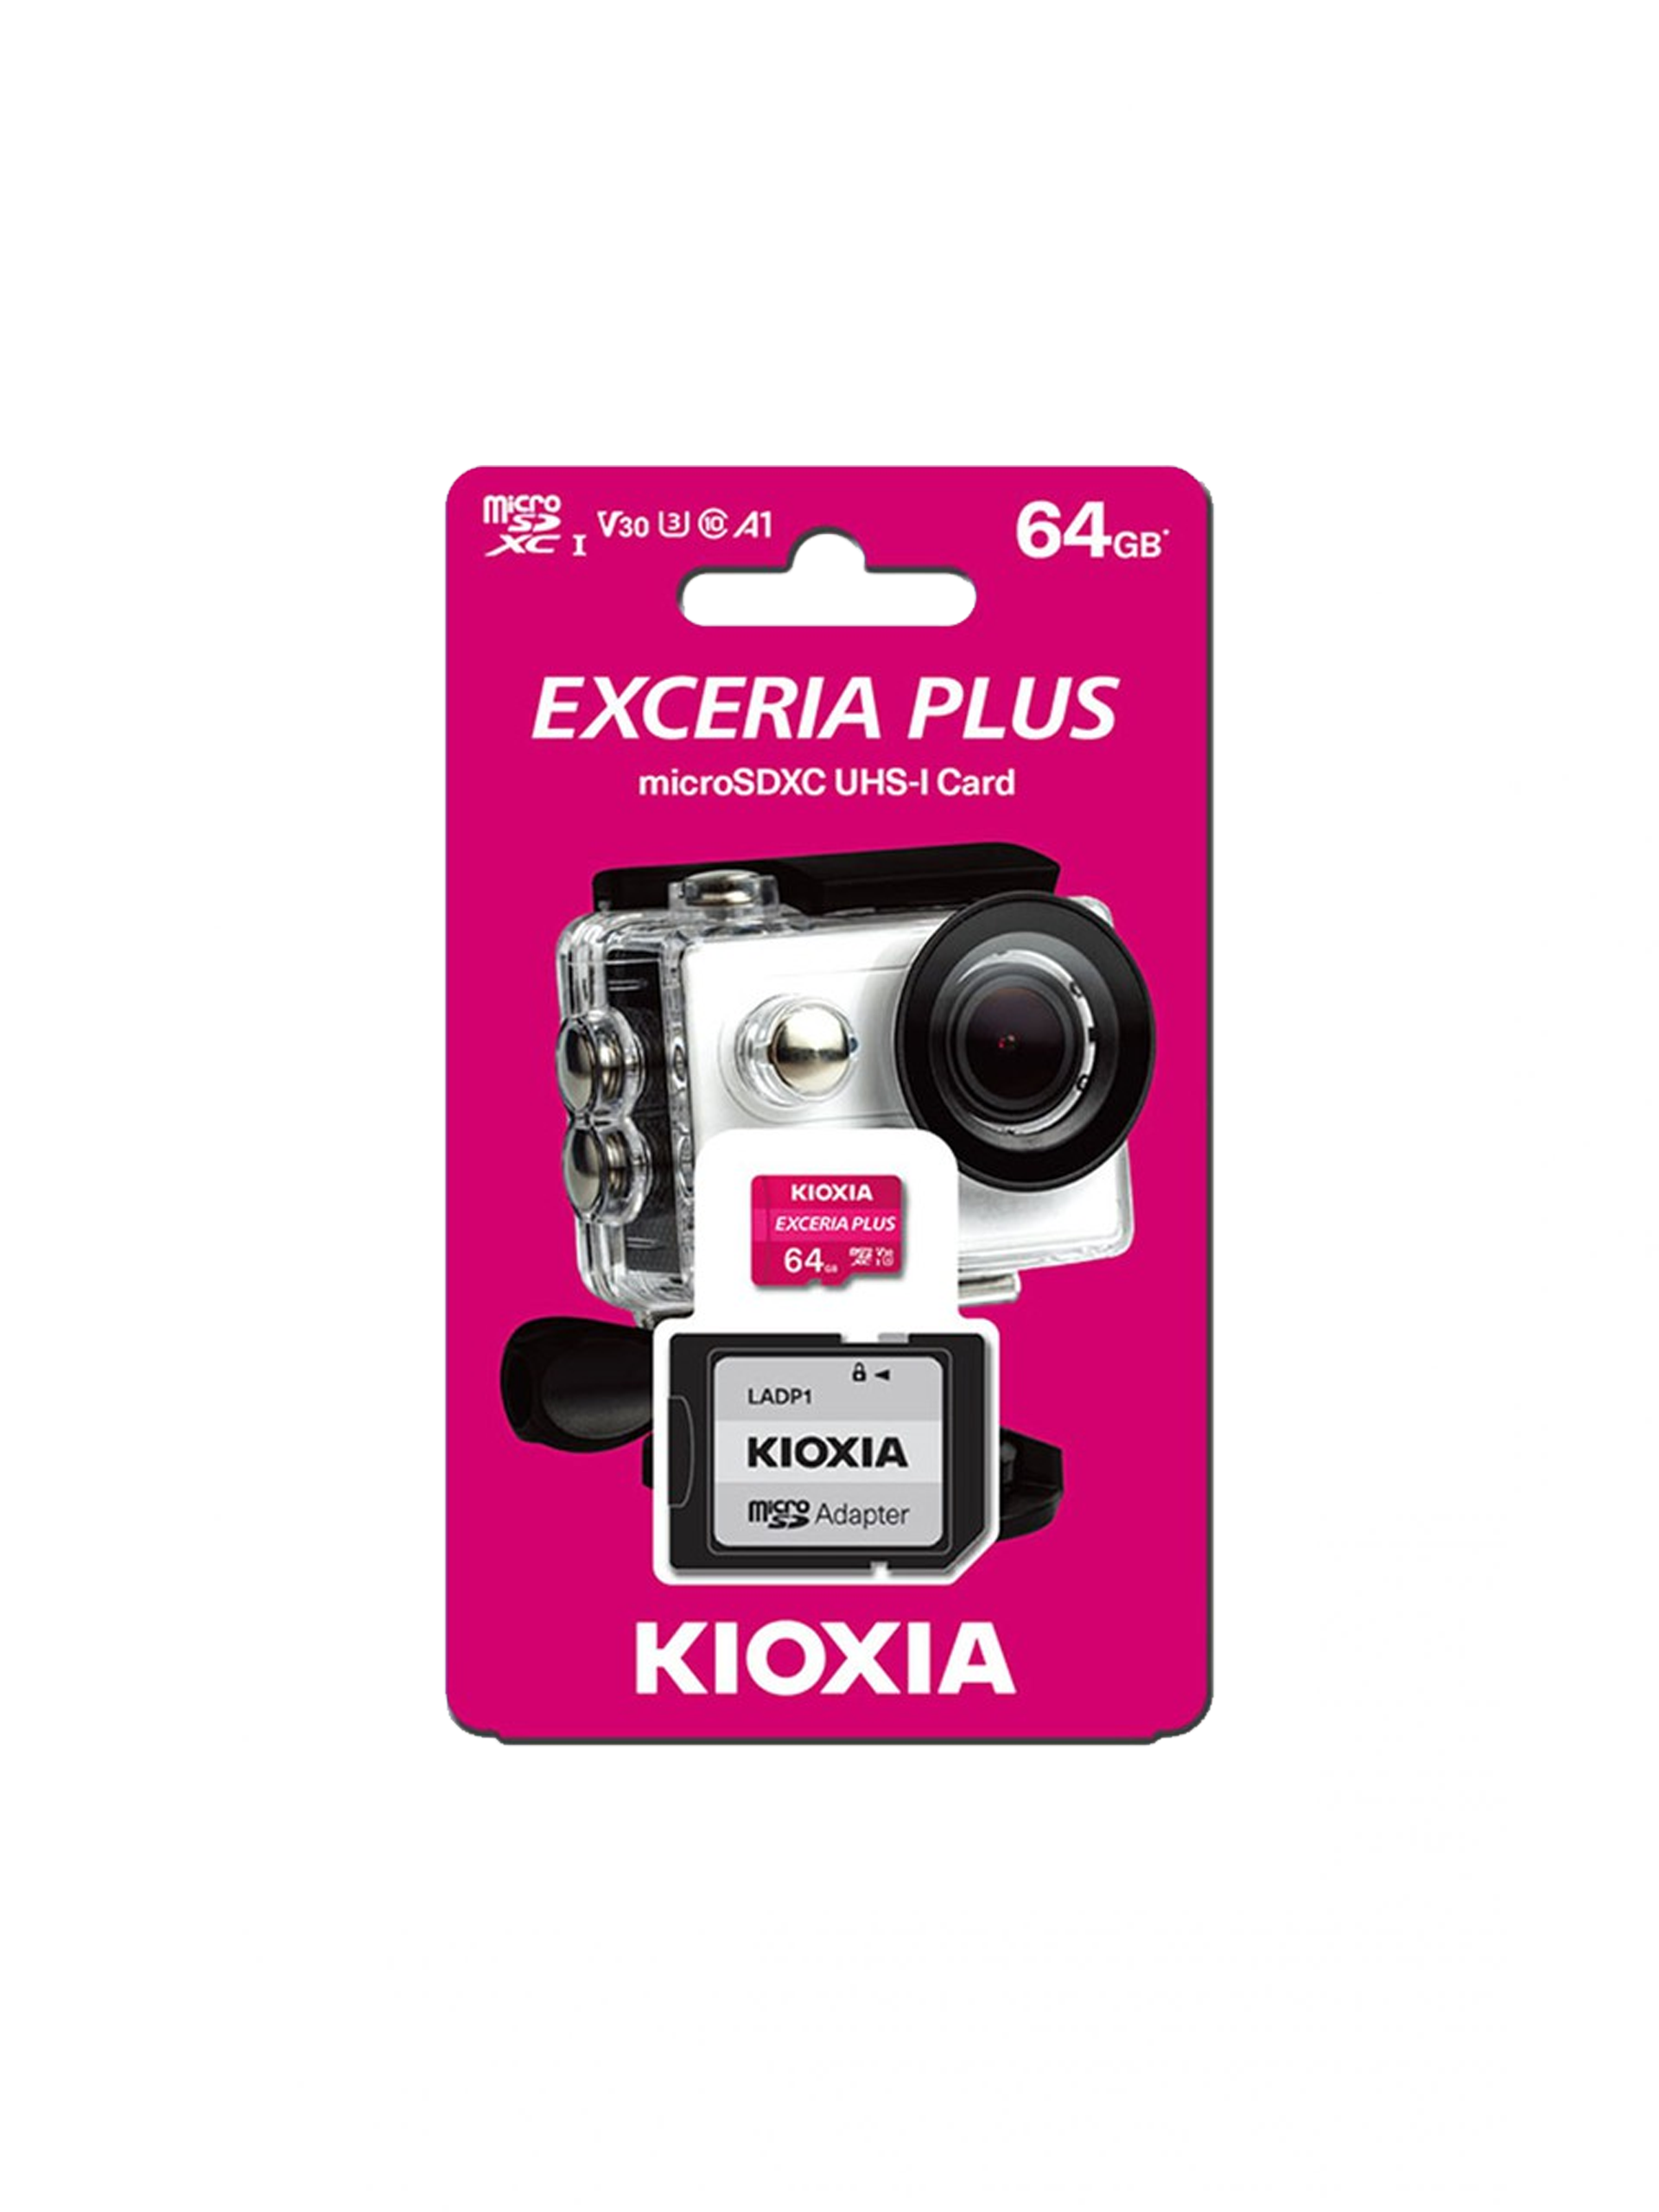 KIOXIA Exceria MicroSDXC UHS-1 Card 64GB